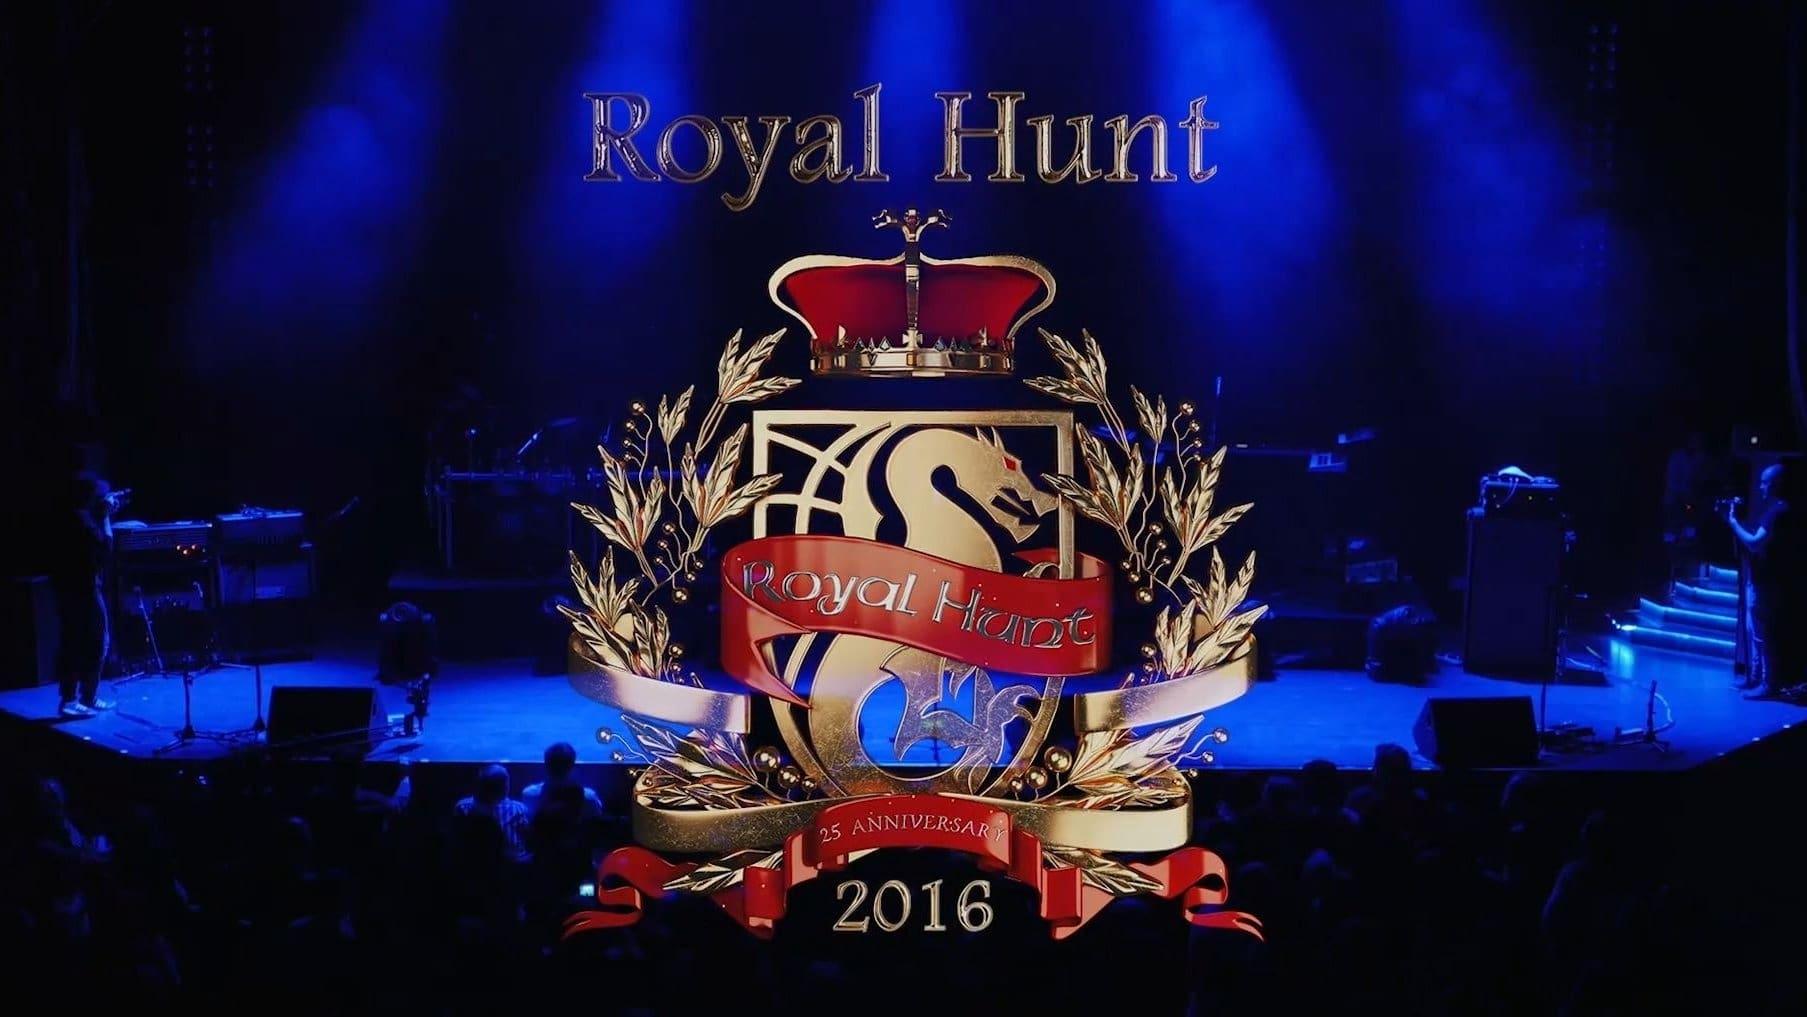 Royal Hunt - "2016" backdrop